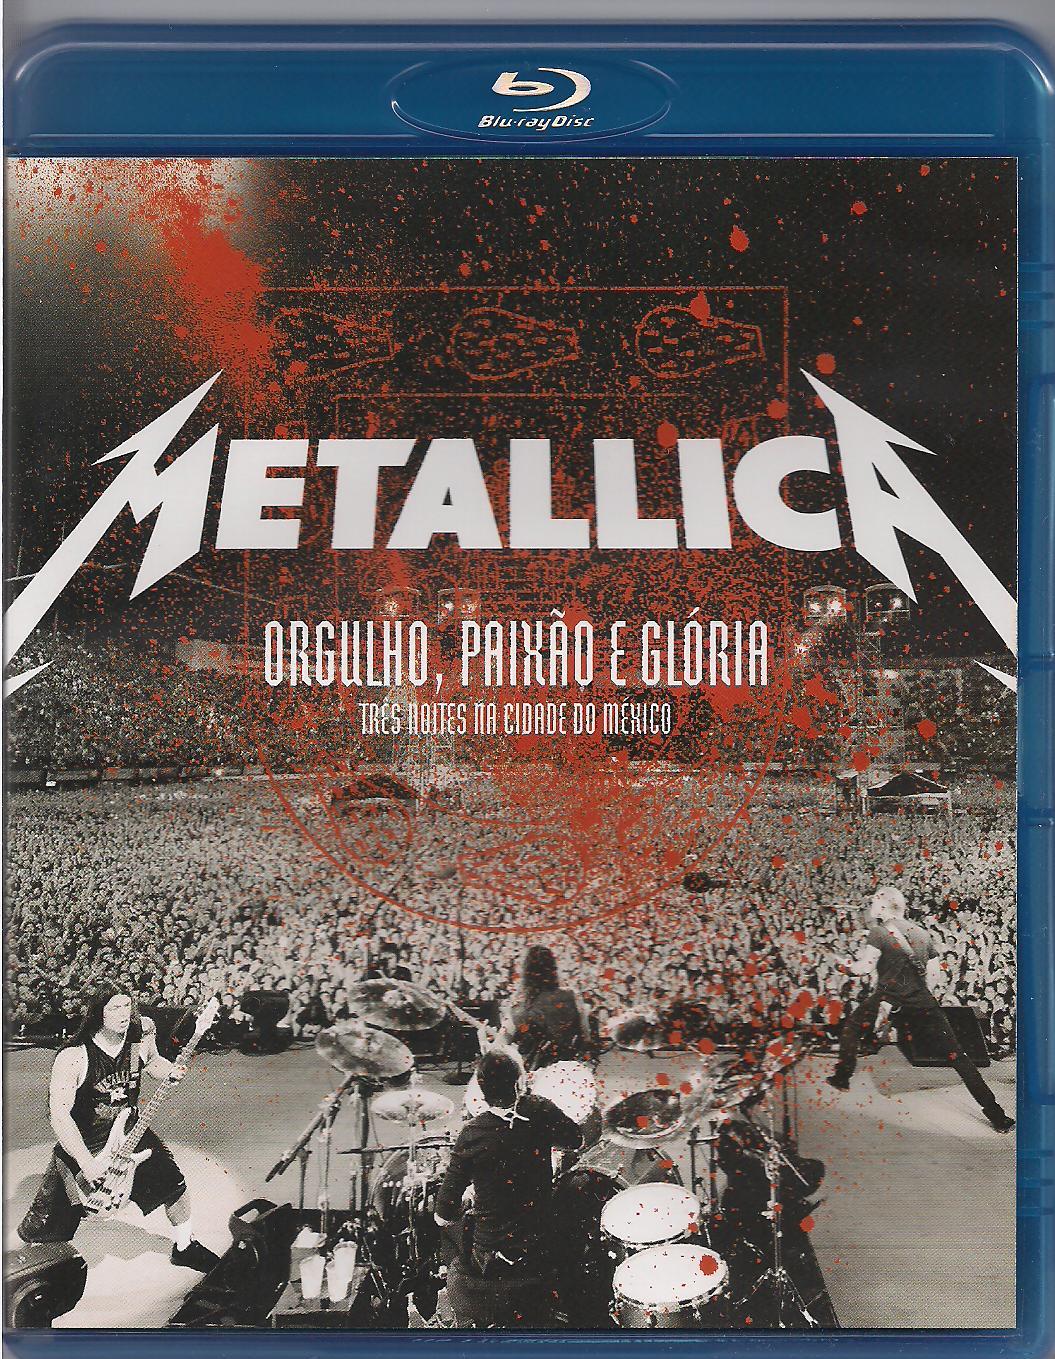 Metallica: Orgullo Pasión y Gloria Blu-ray (Metallica: Orgulho